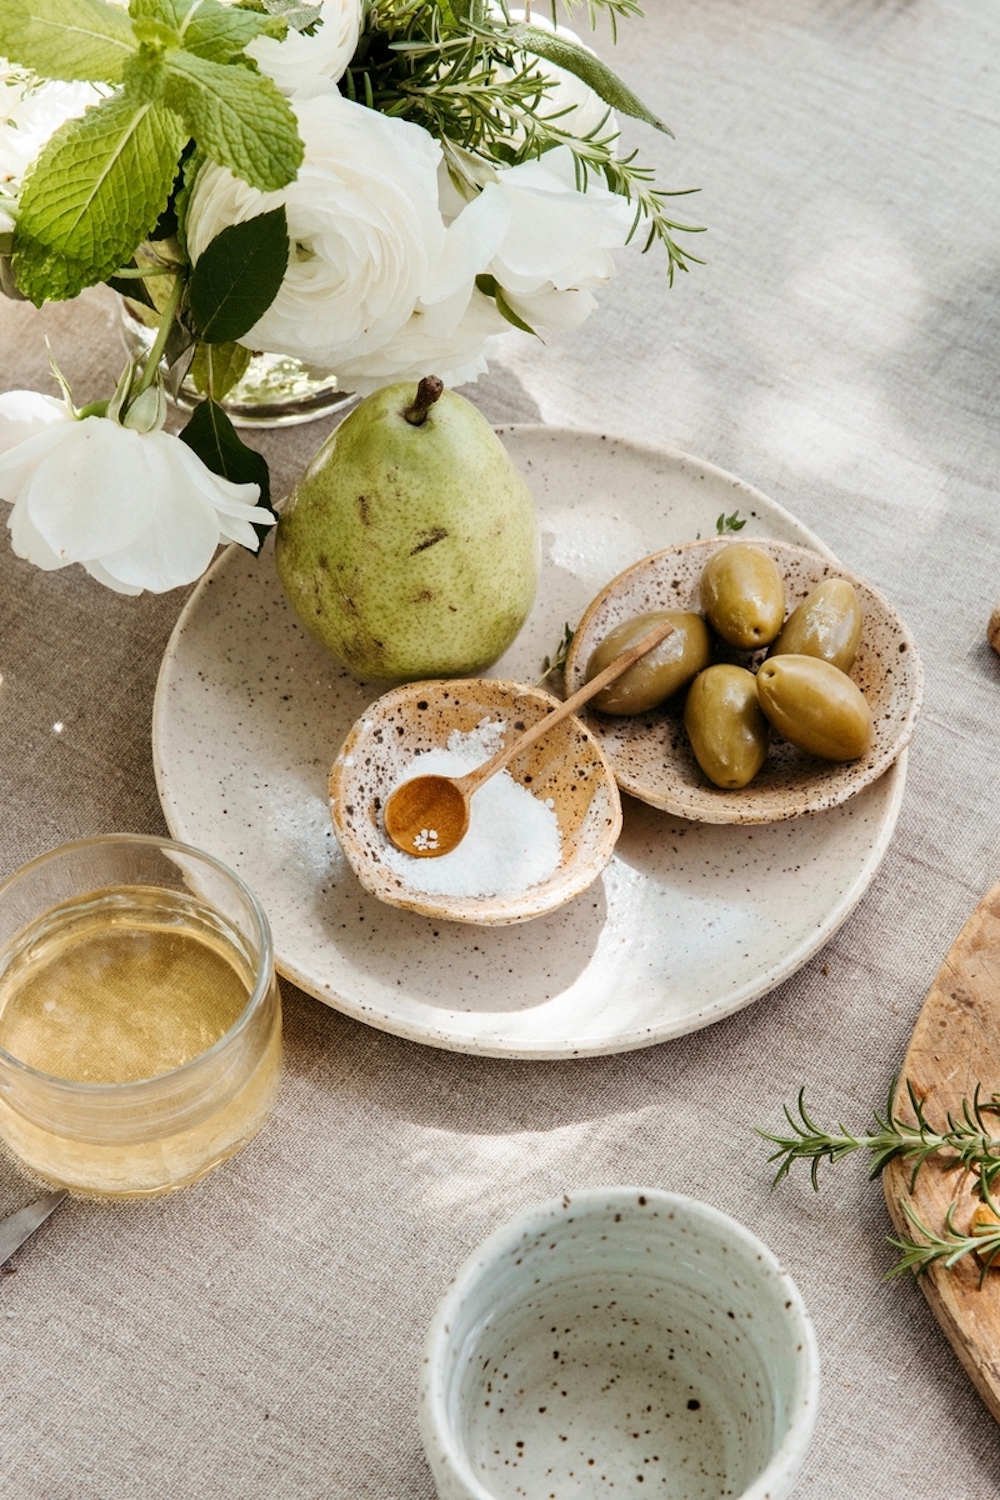 ظروف سنگی پر از نمک پولک و زیتون روی بشقاب سنگی با گلابی در کنار لیوان شراب و دسته گل سفید.